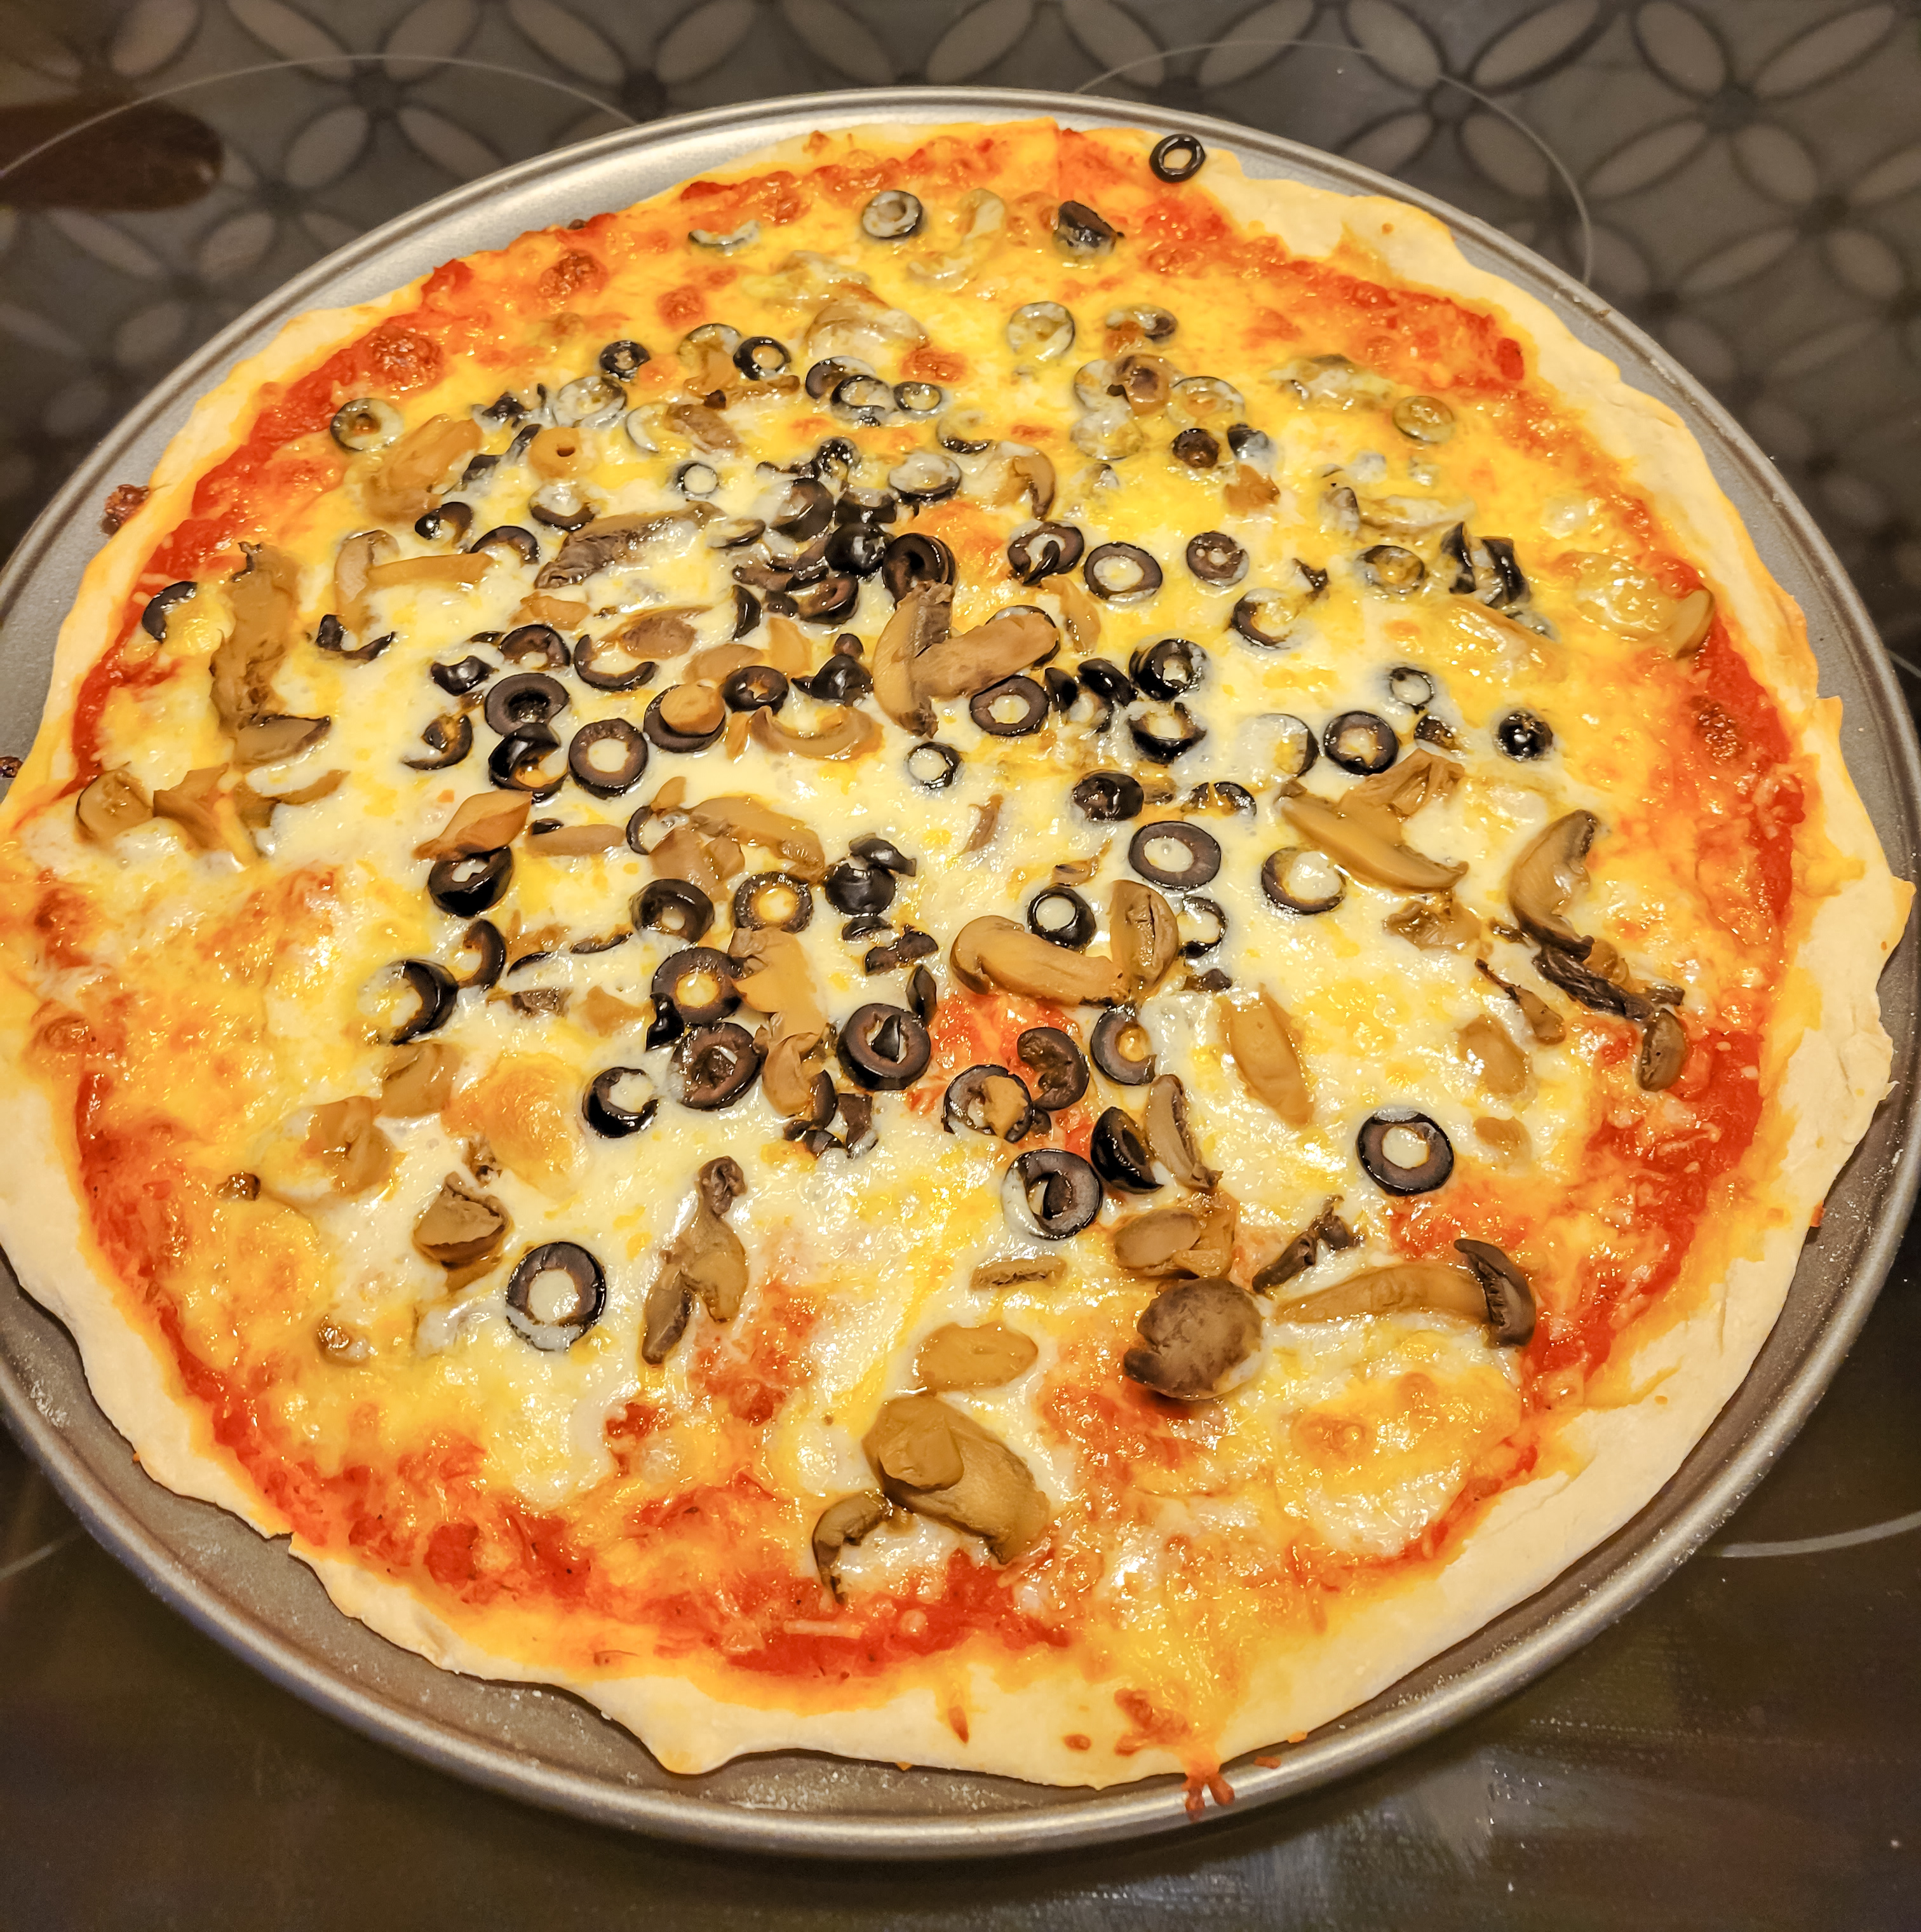 Olive and mushroom pizza